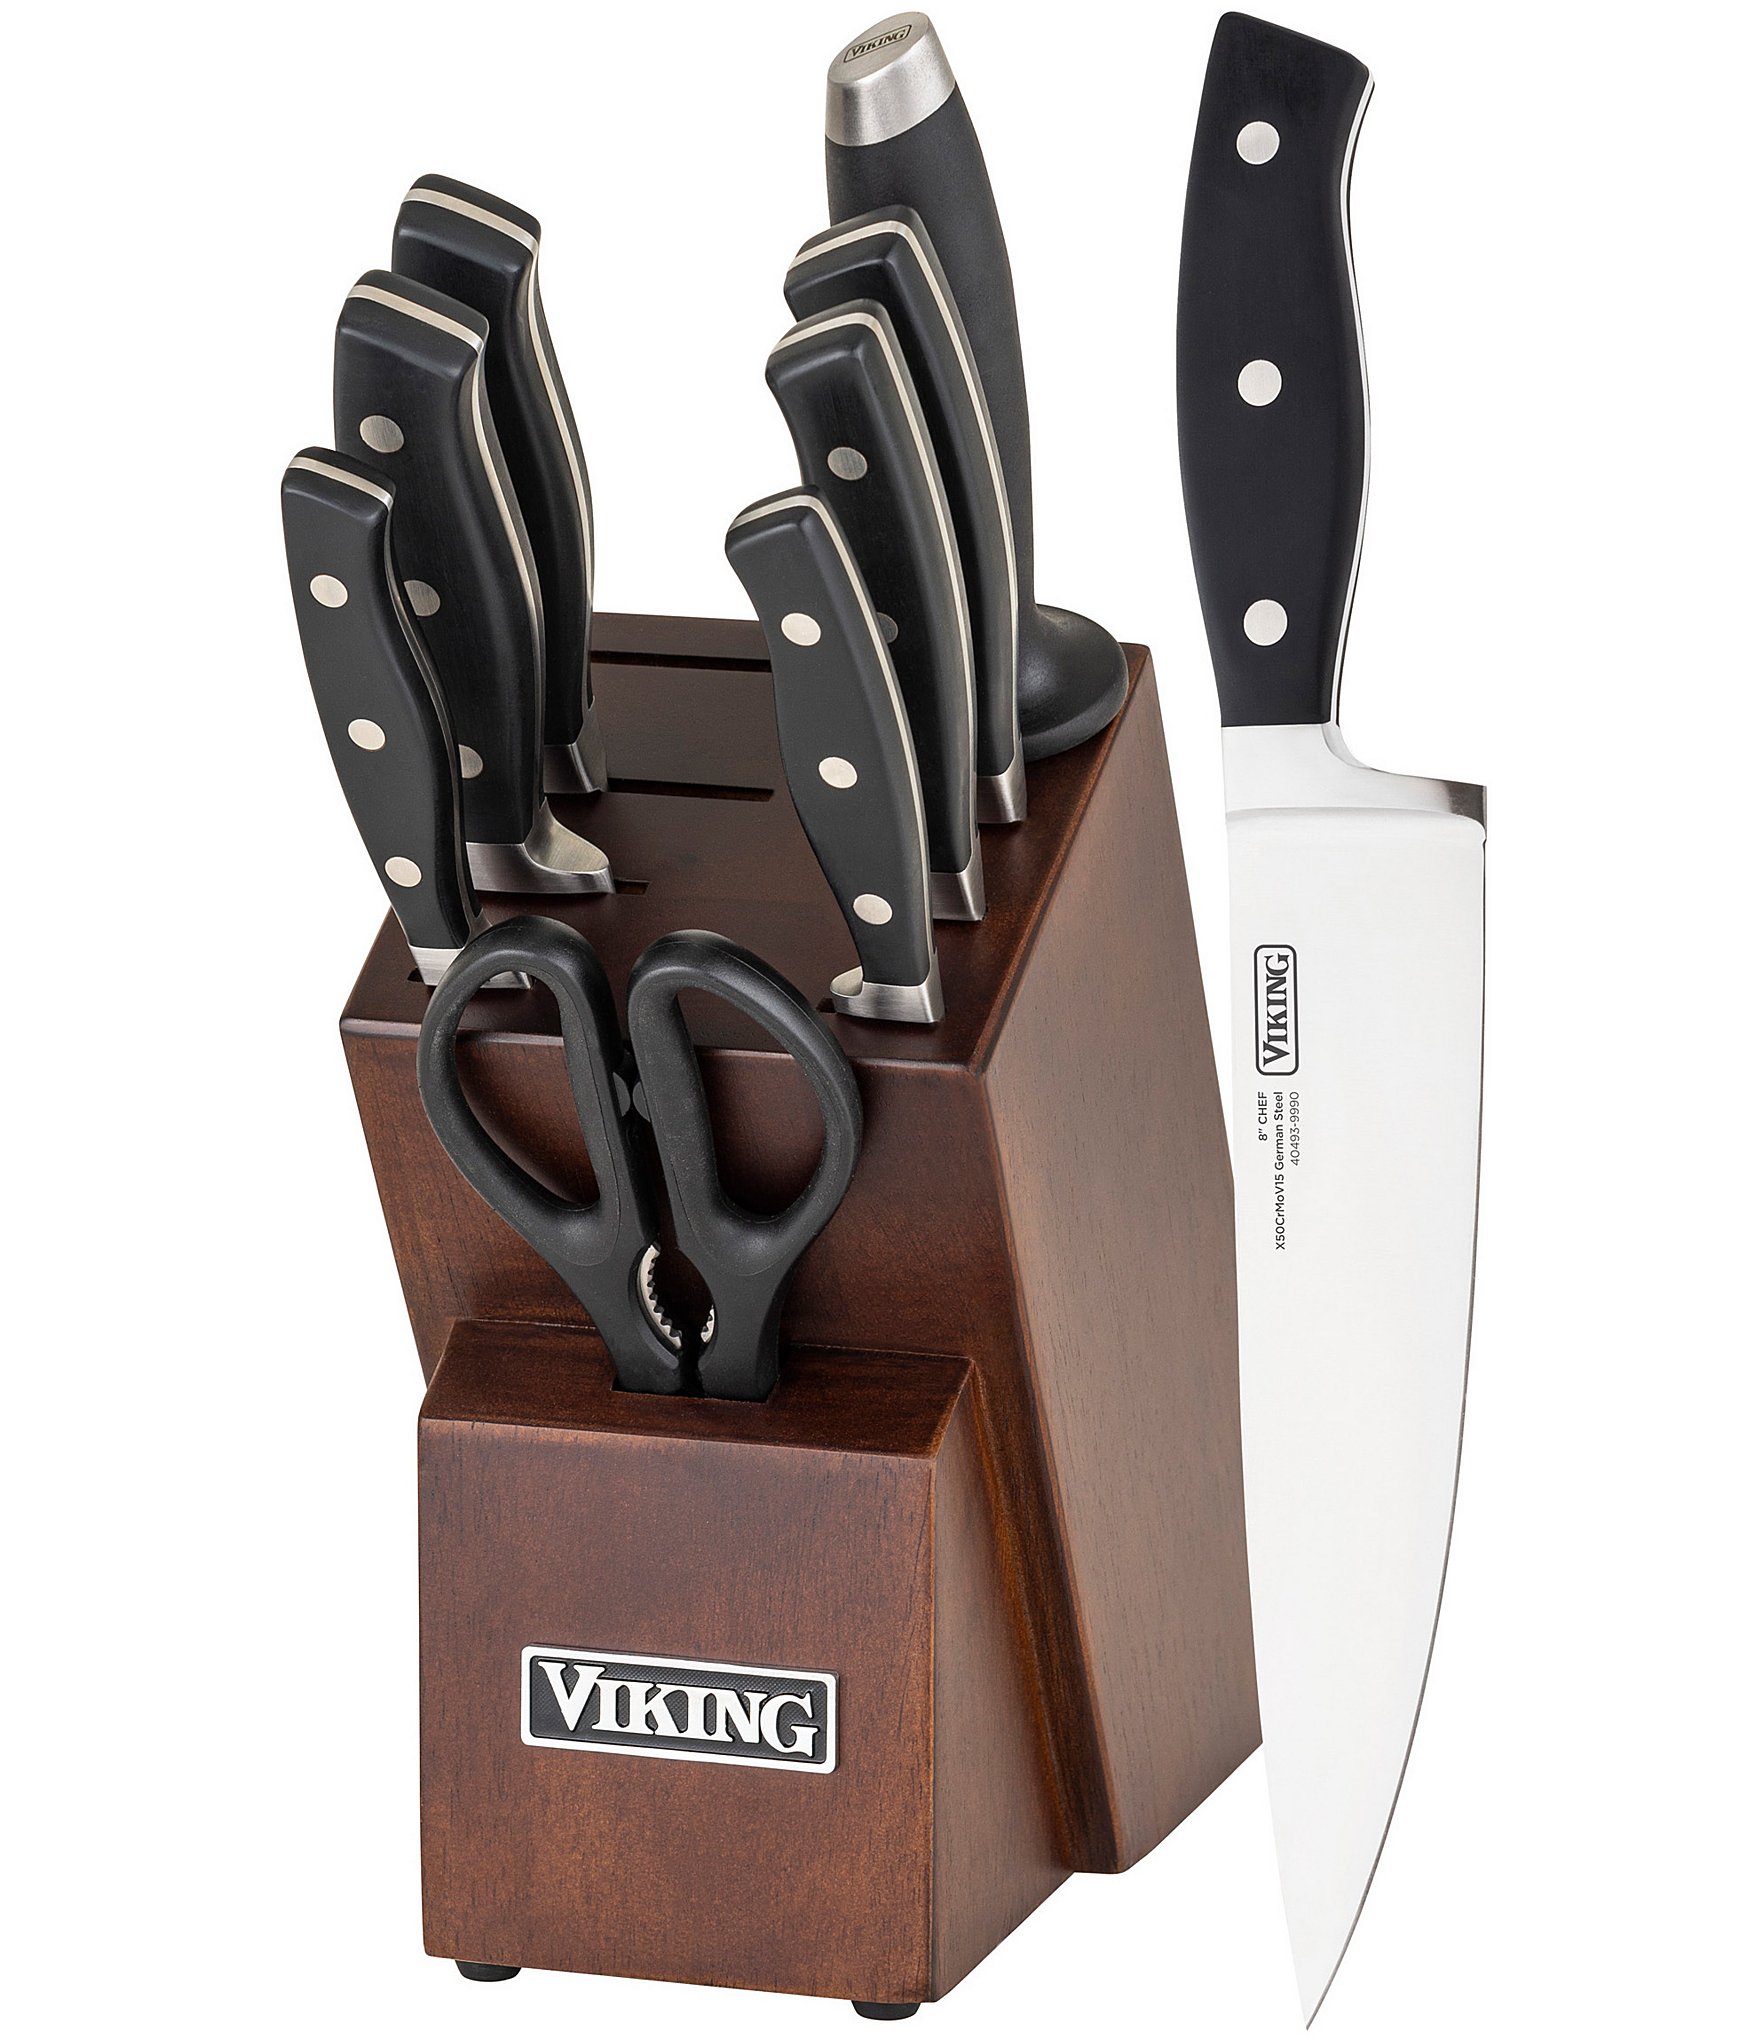 Wusthof Gourmet 10-Piece Acacia Knife Block Set at Swiss Knife Shop